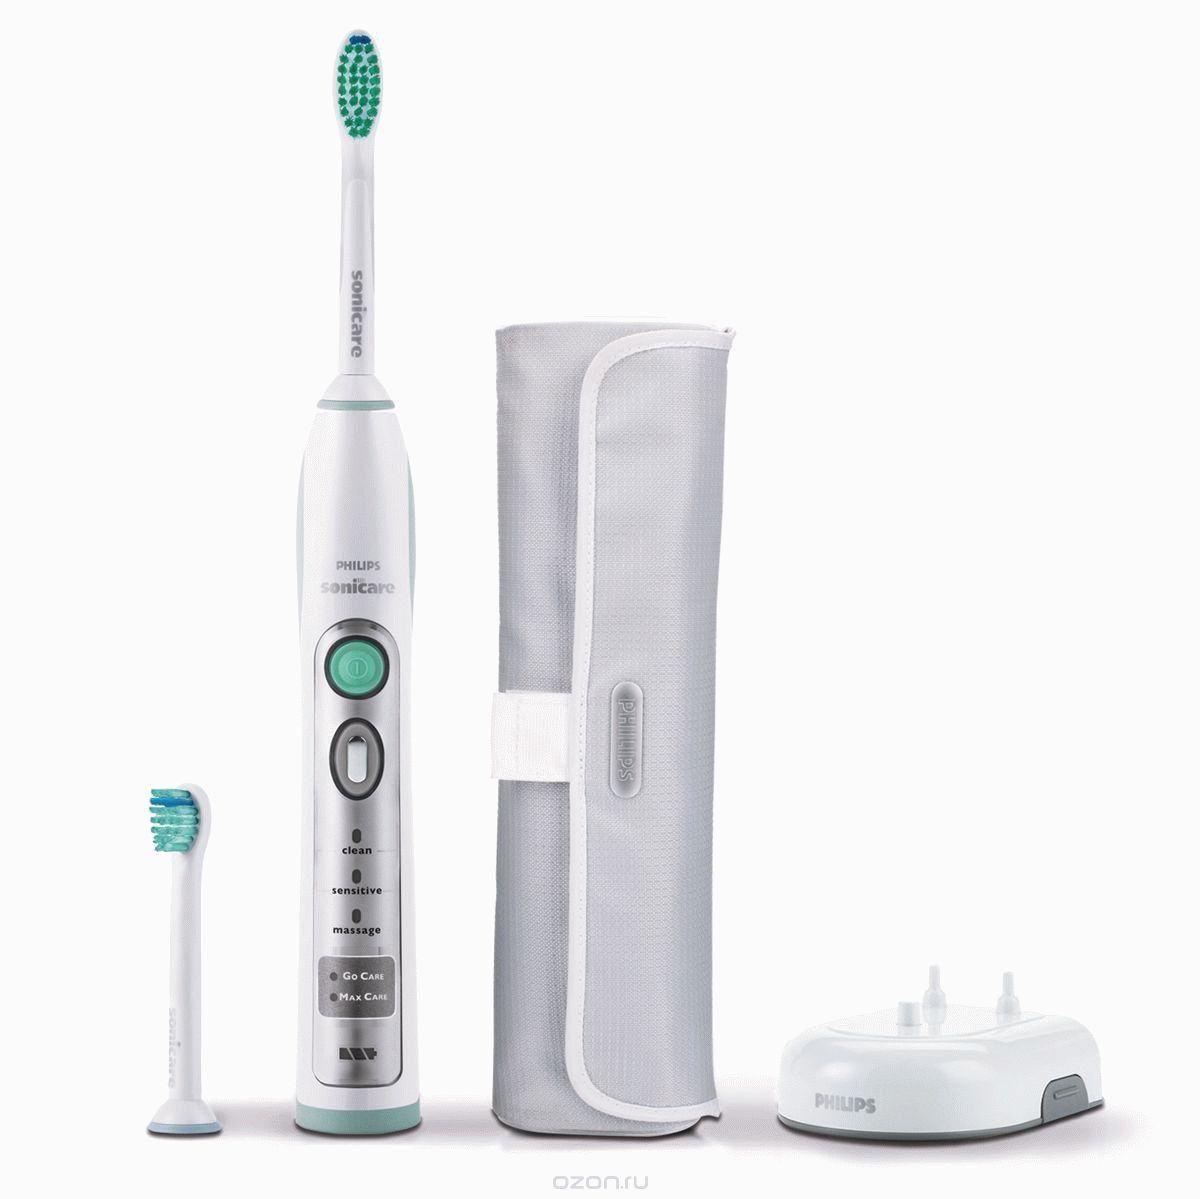 Classement des meilleures brosses à dents électriques pour toute la famille pour 2020